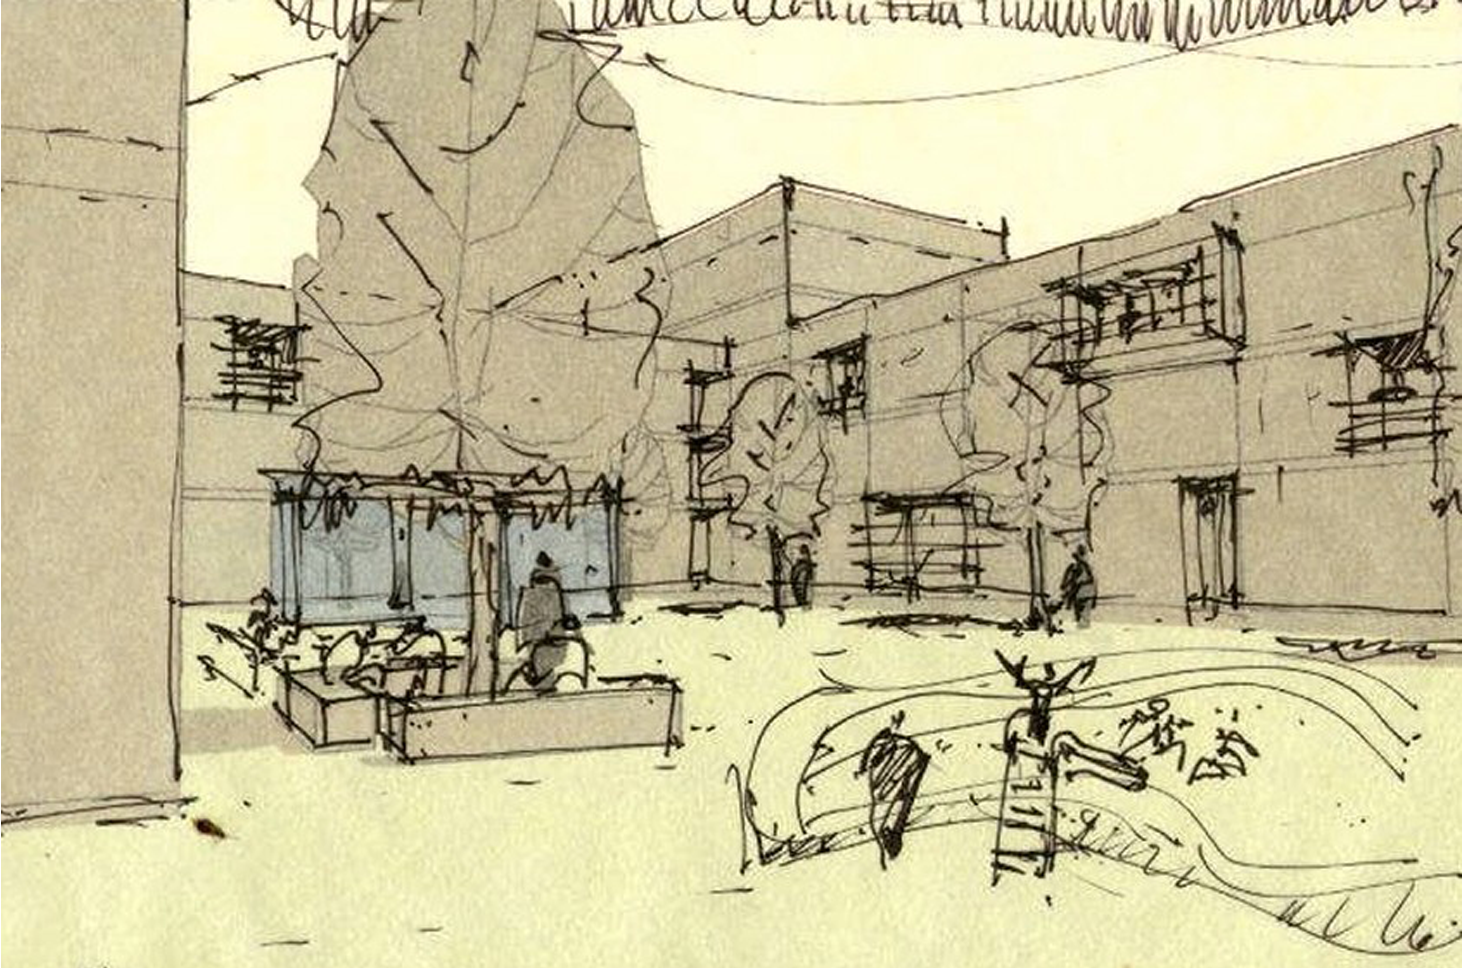 Tibilisi_courtyard sketch_ground level